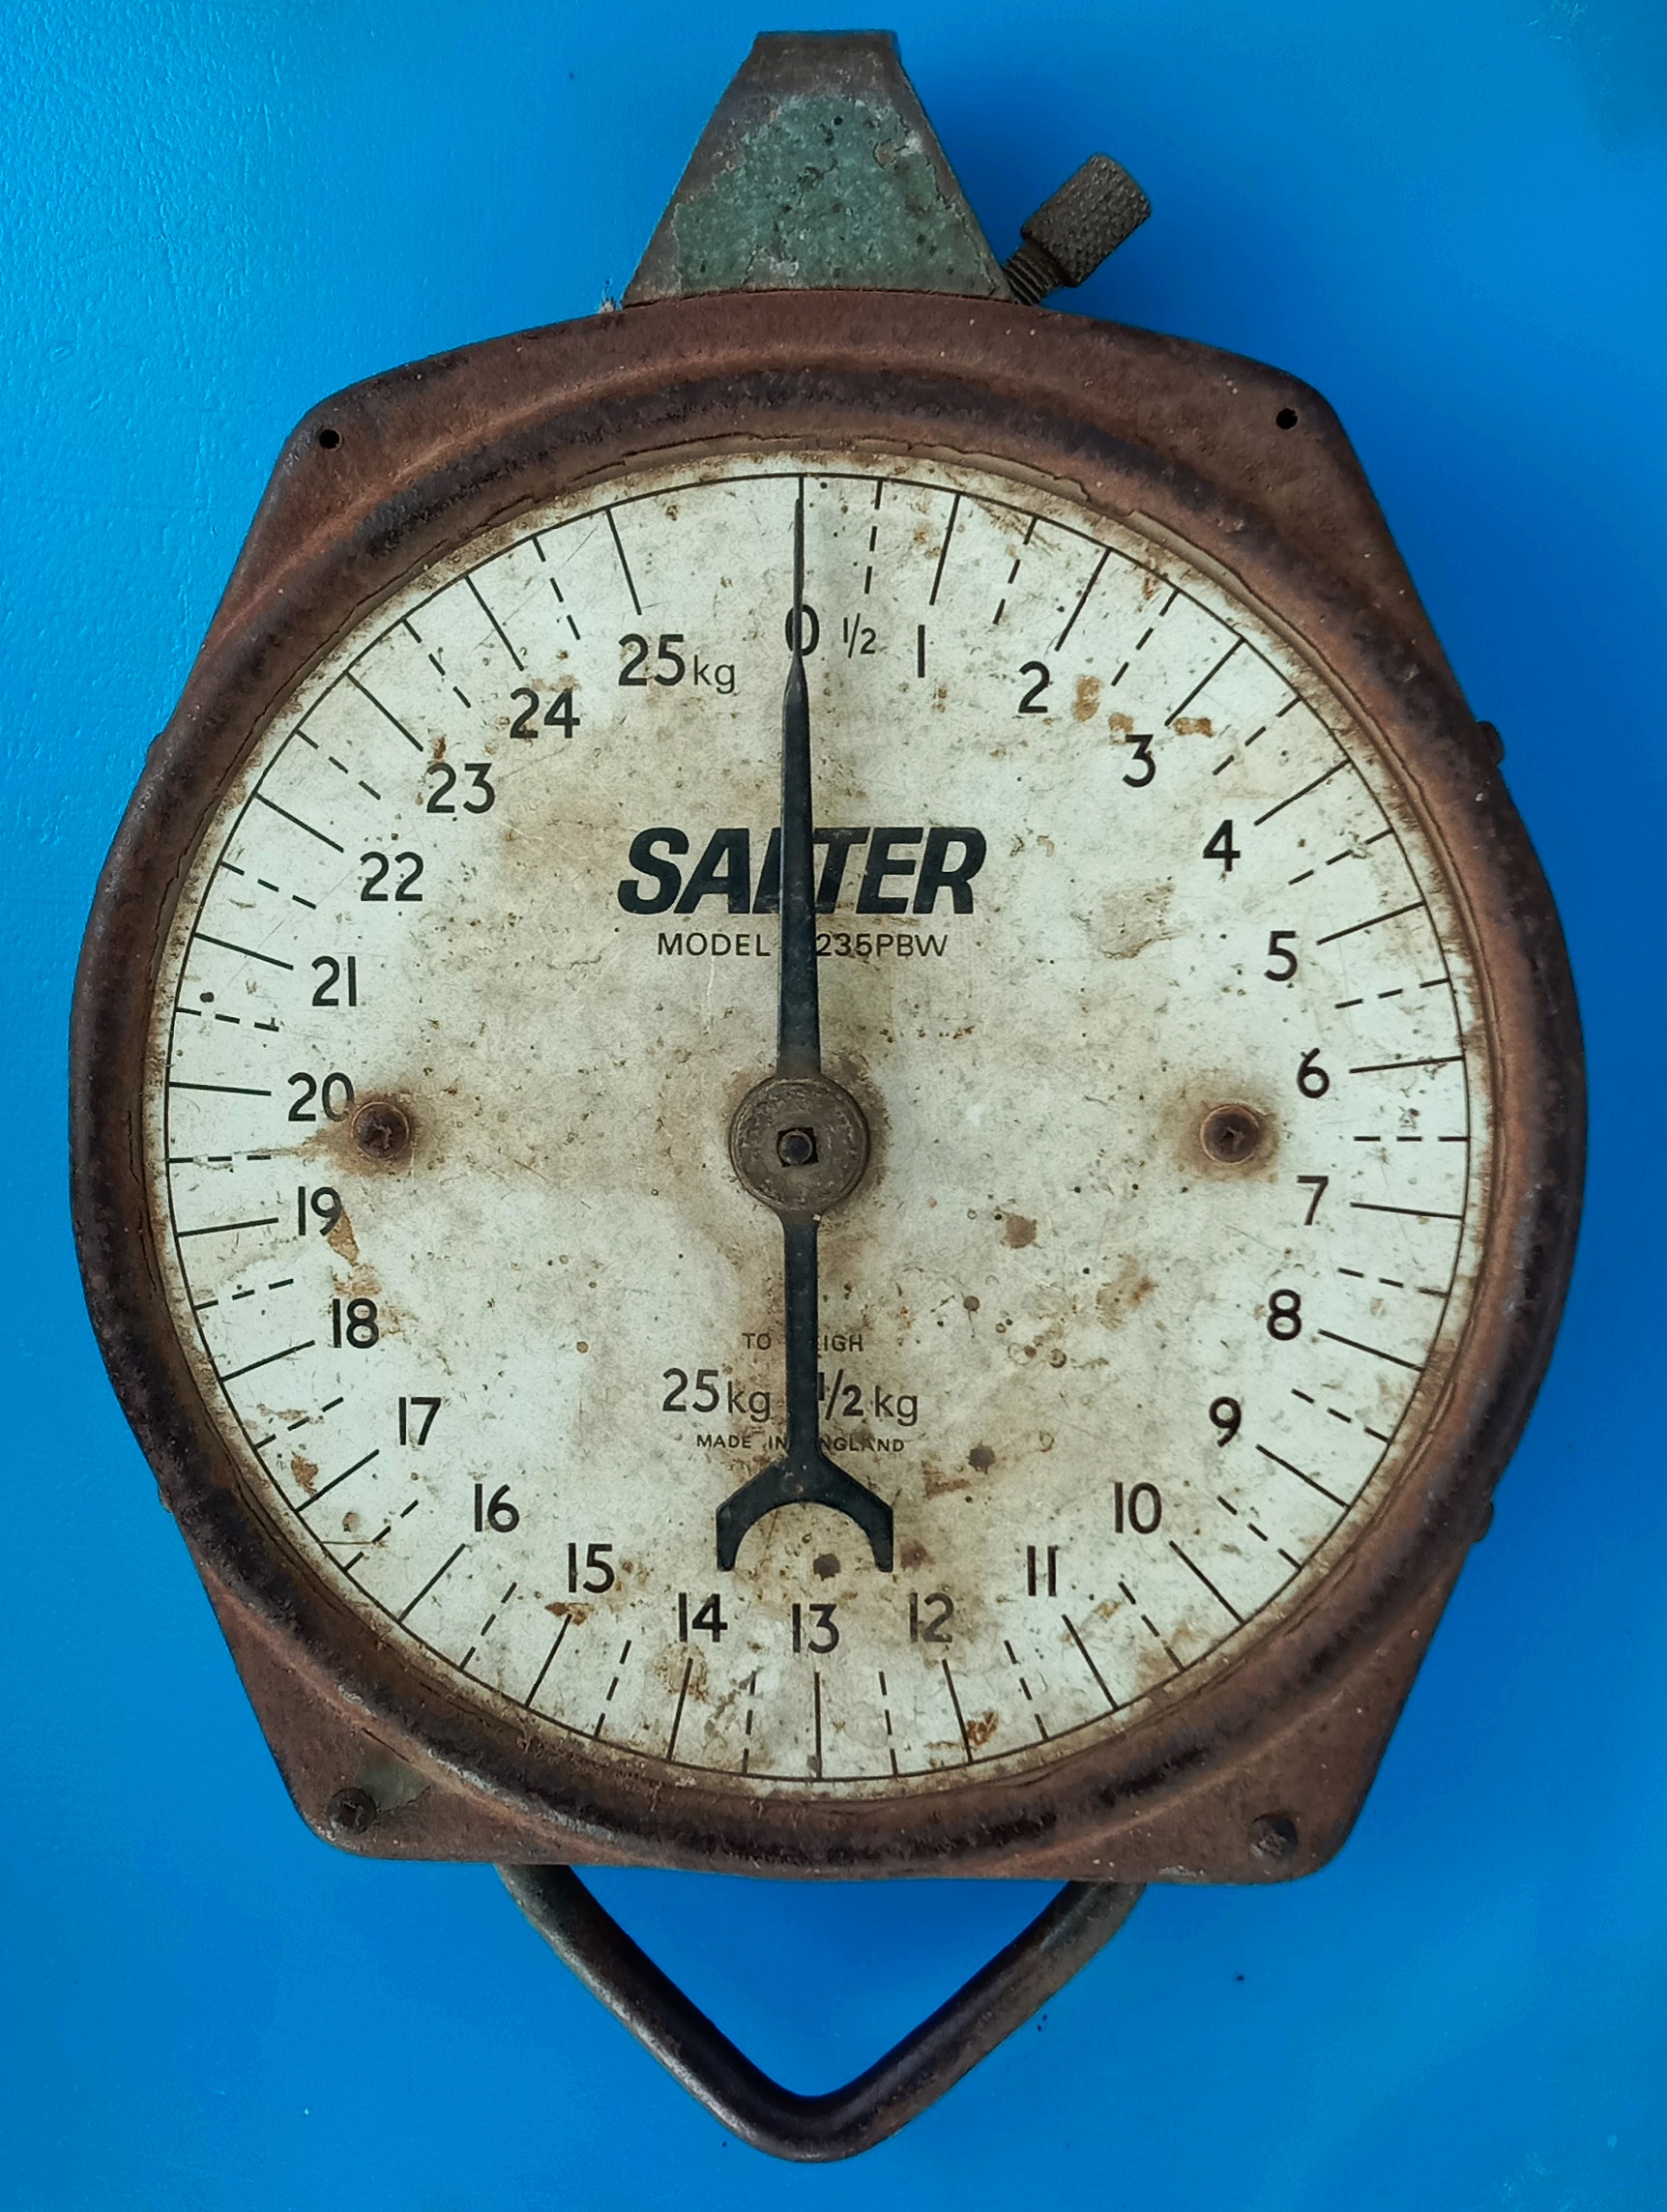 An old analog meter